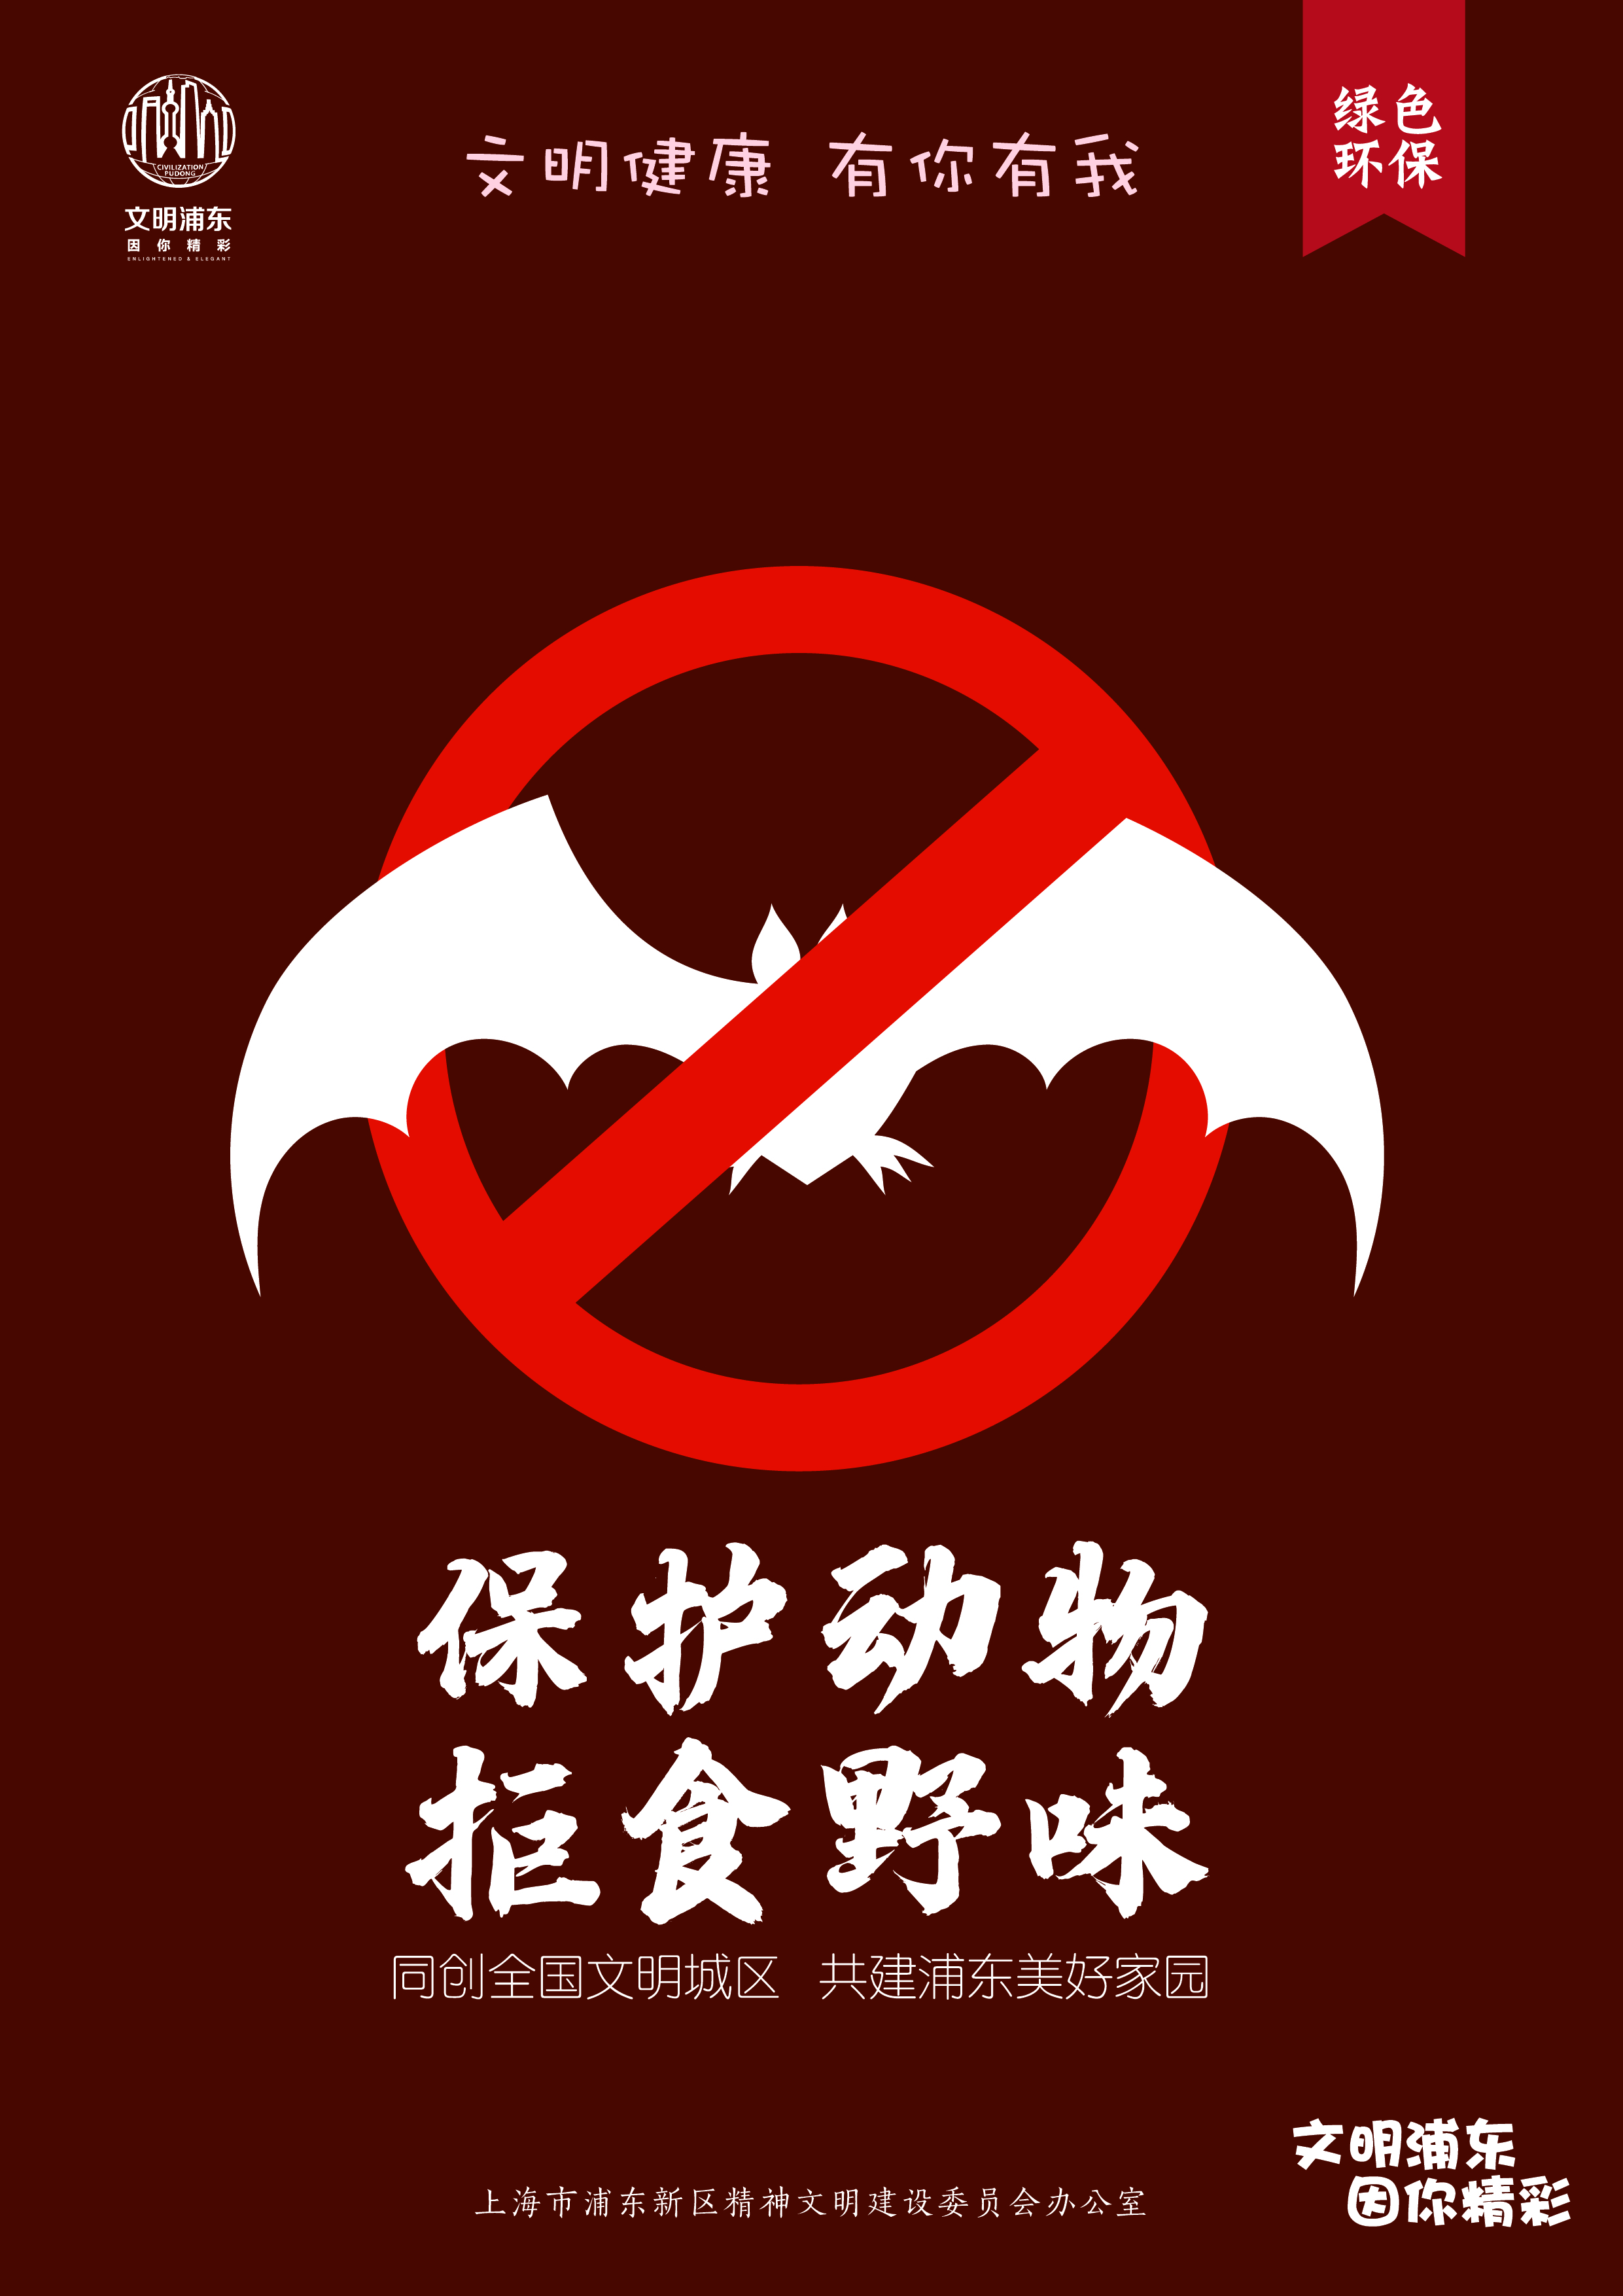 禁止杀害野生动物标志图片